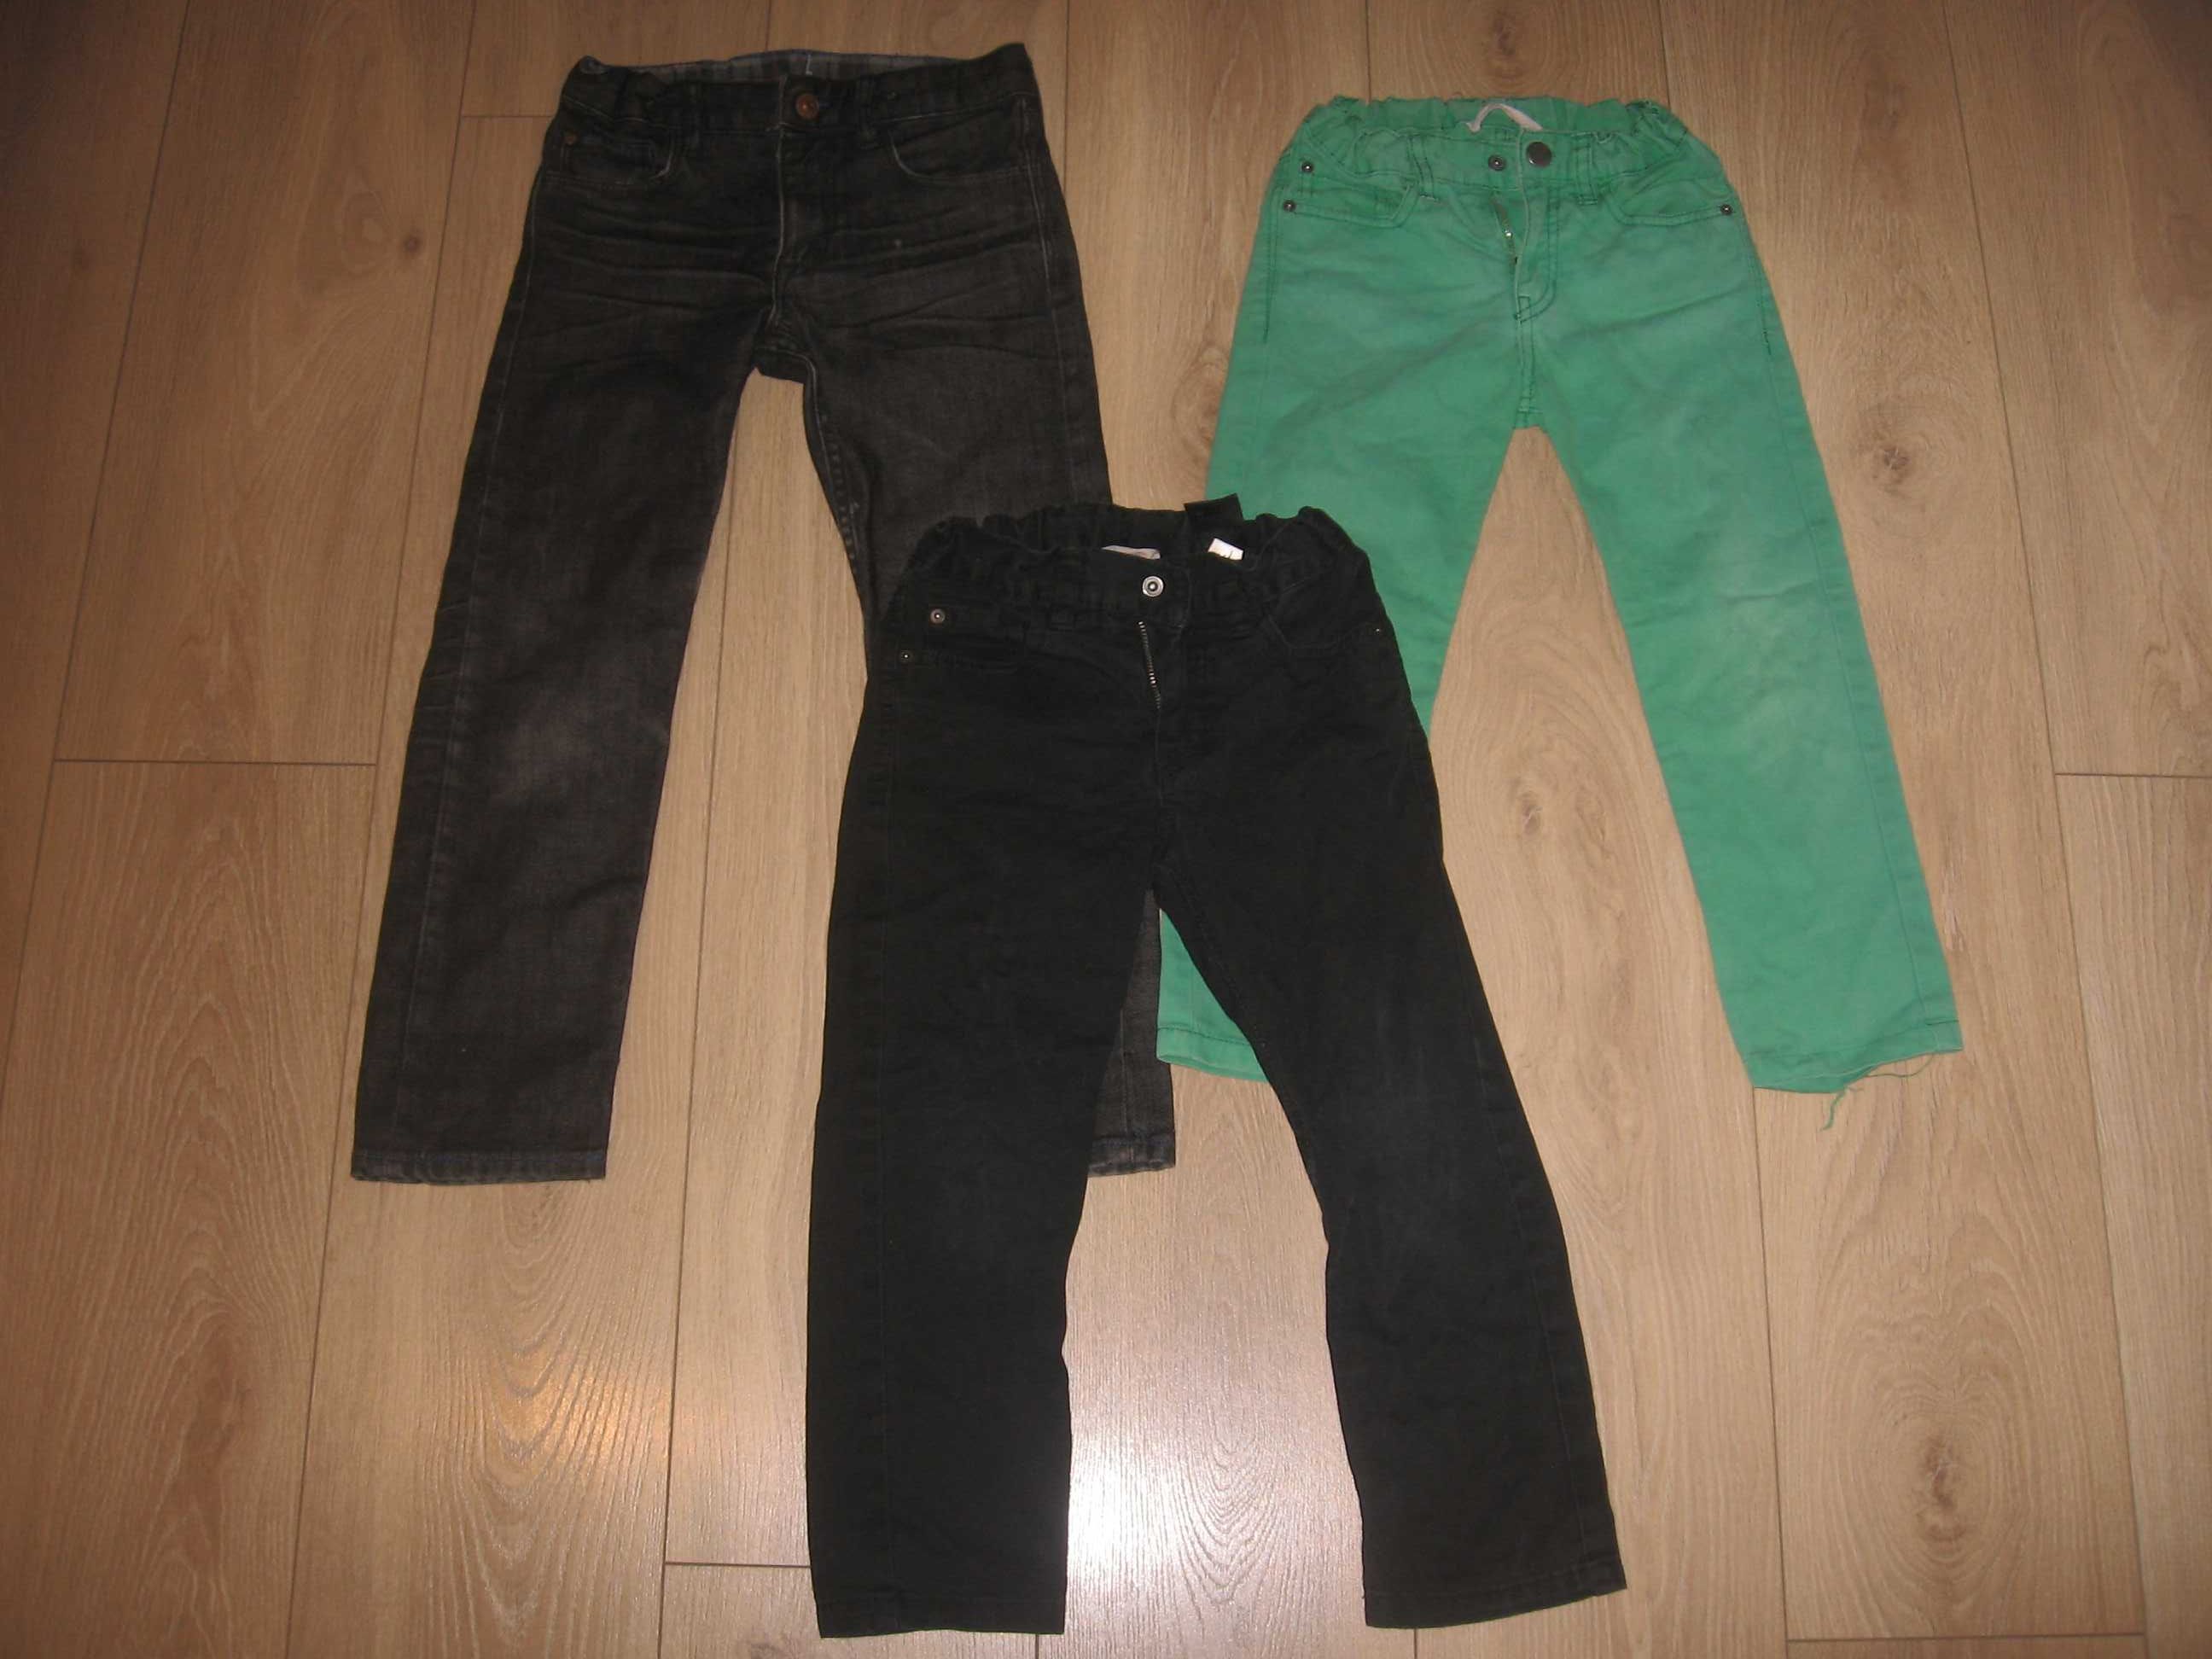 Spodnie dla chłopca zestaw 13 sztuk - rozmiar 104/110 cm - polecam!